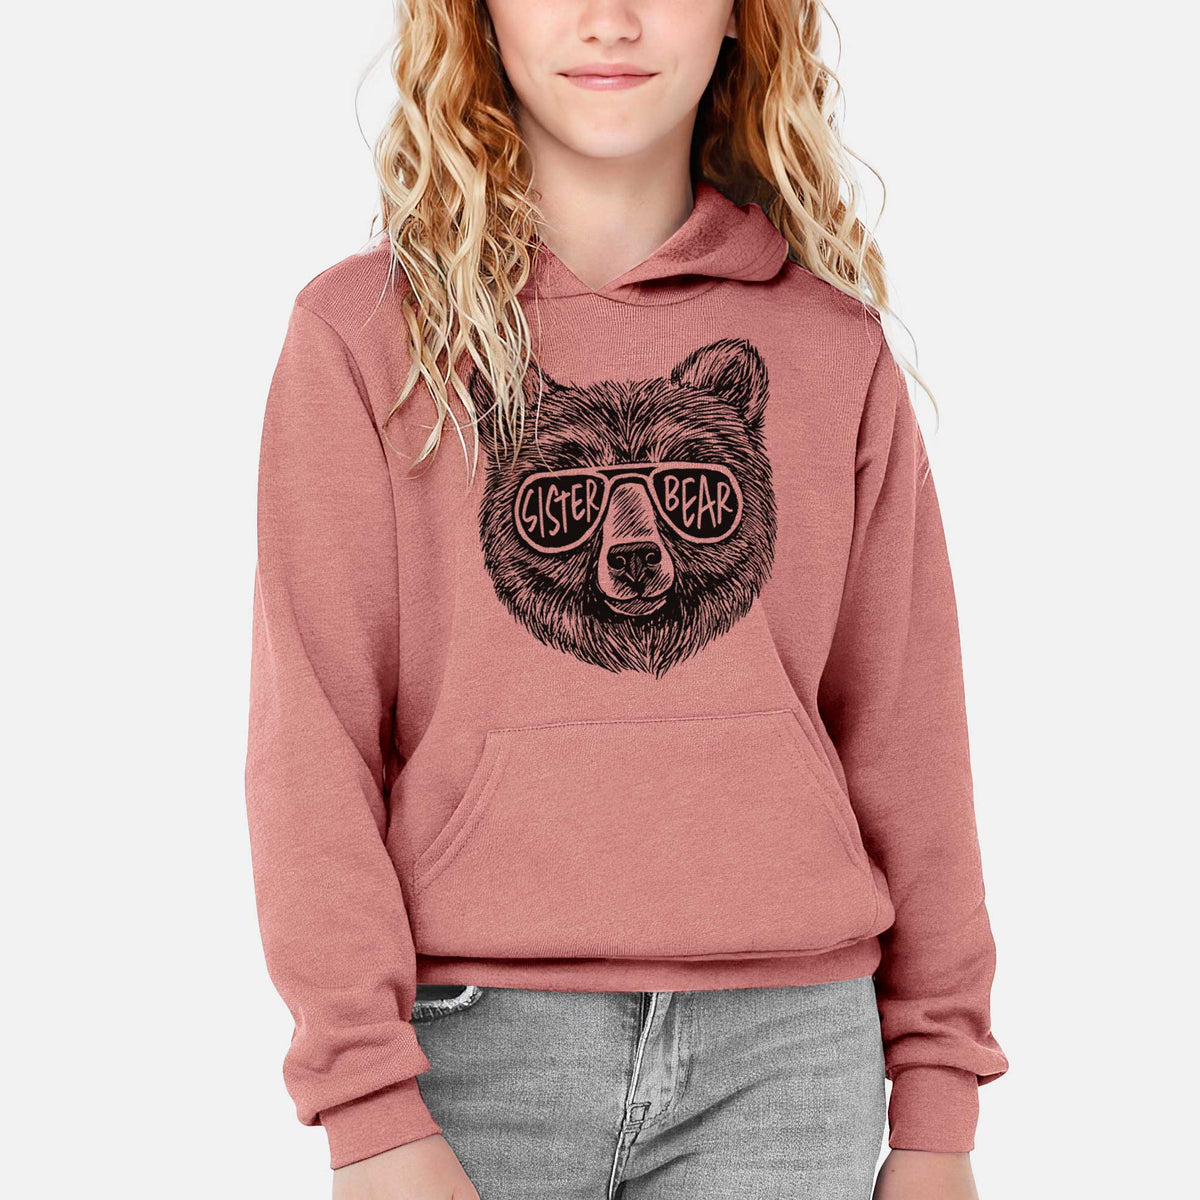 Sister Bear - Youth Hoodie Sweatshirt